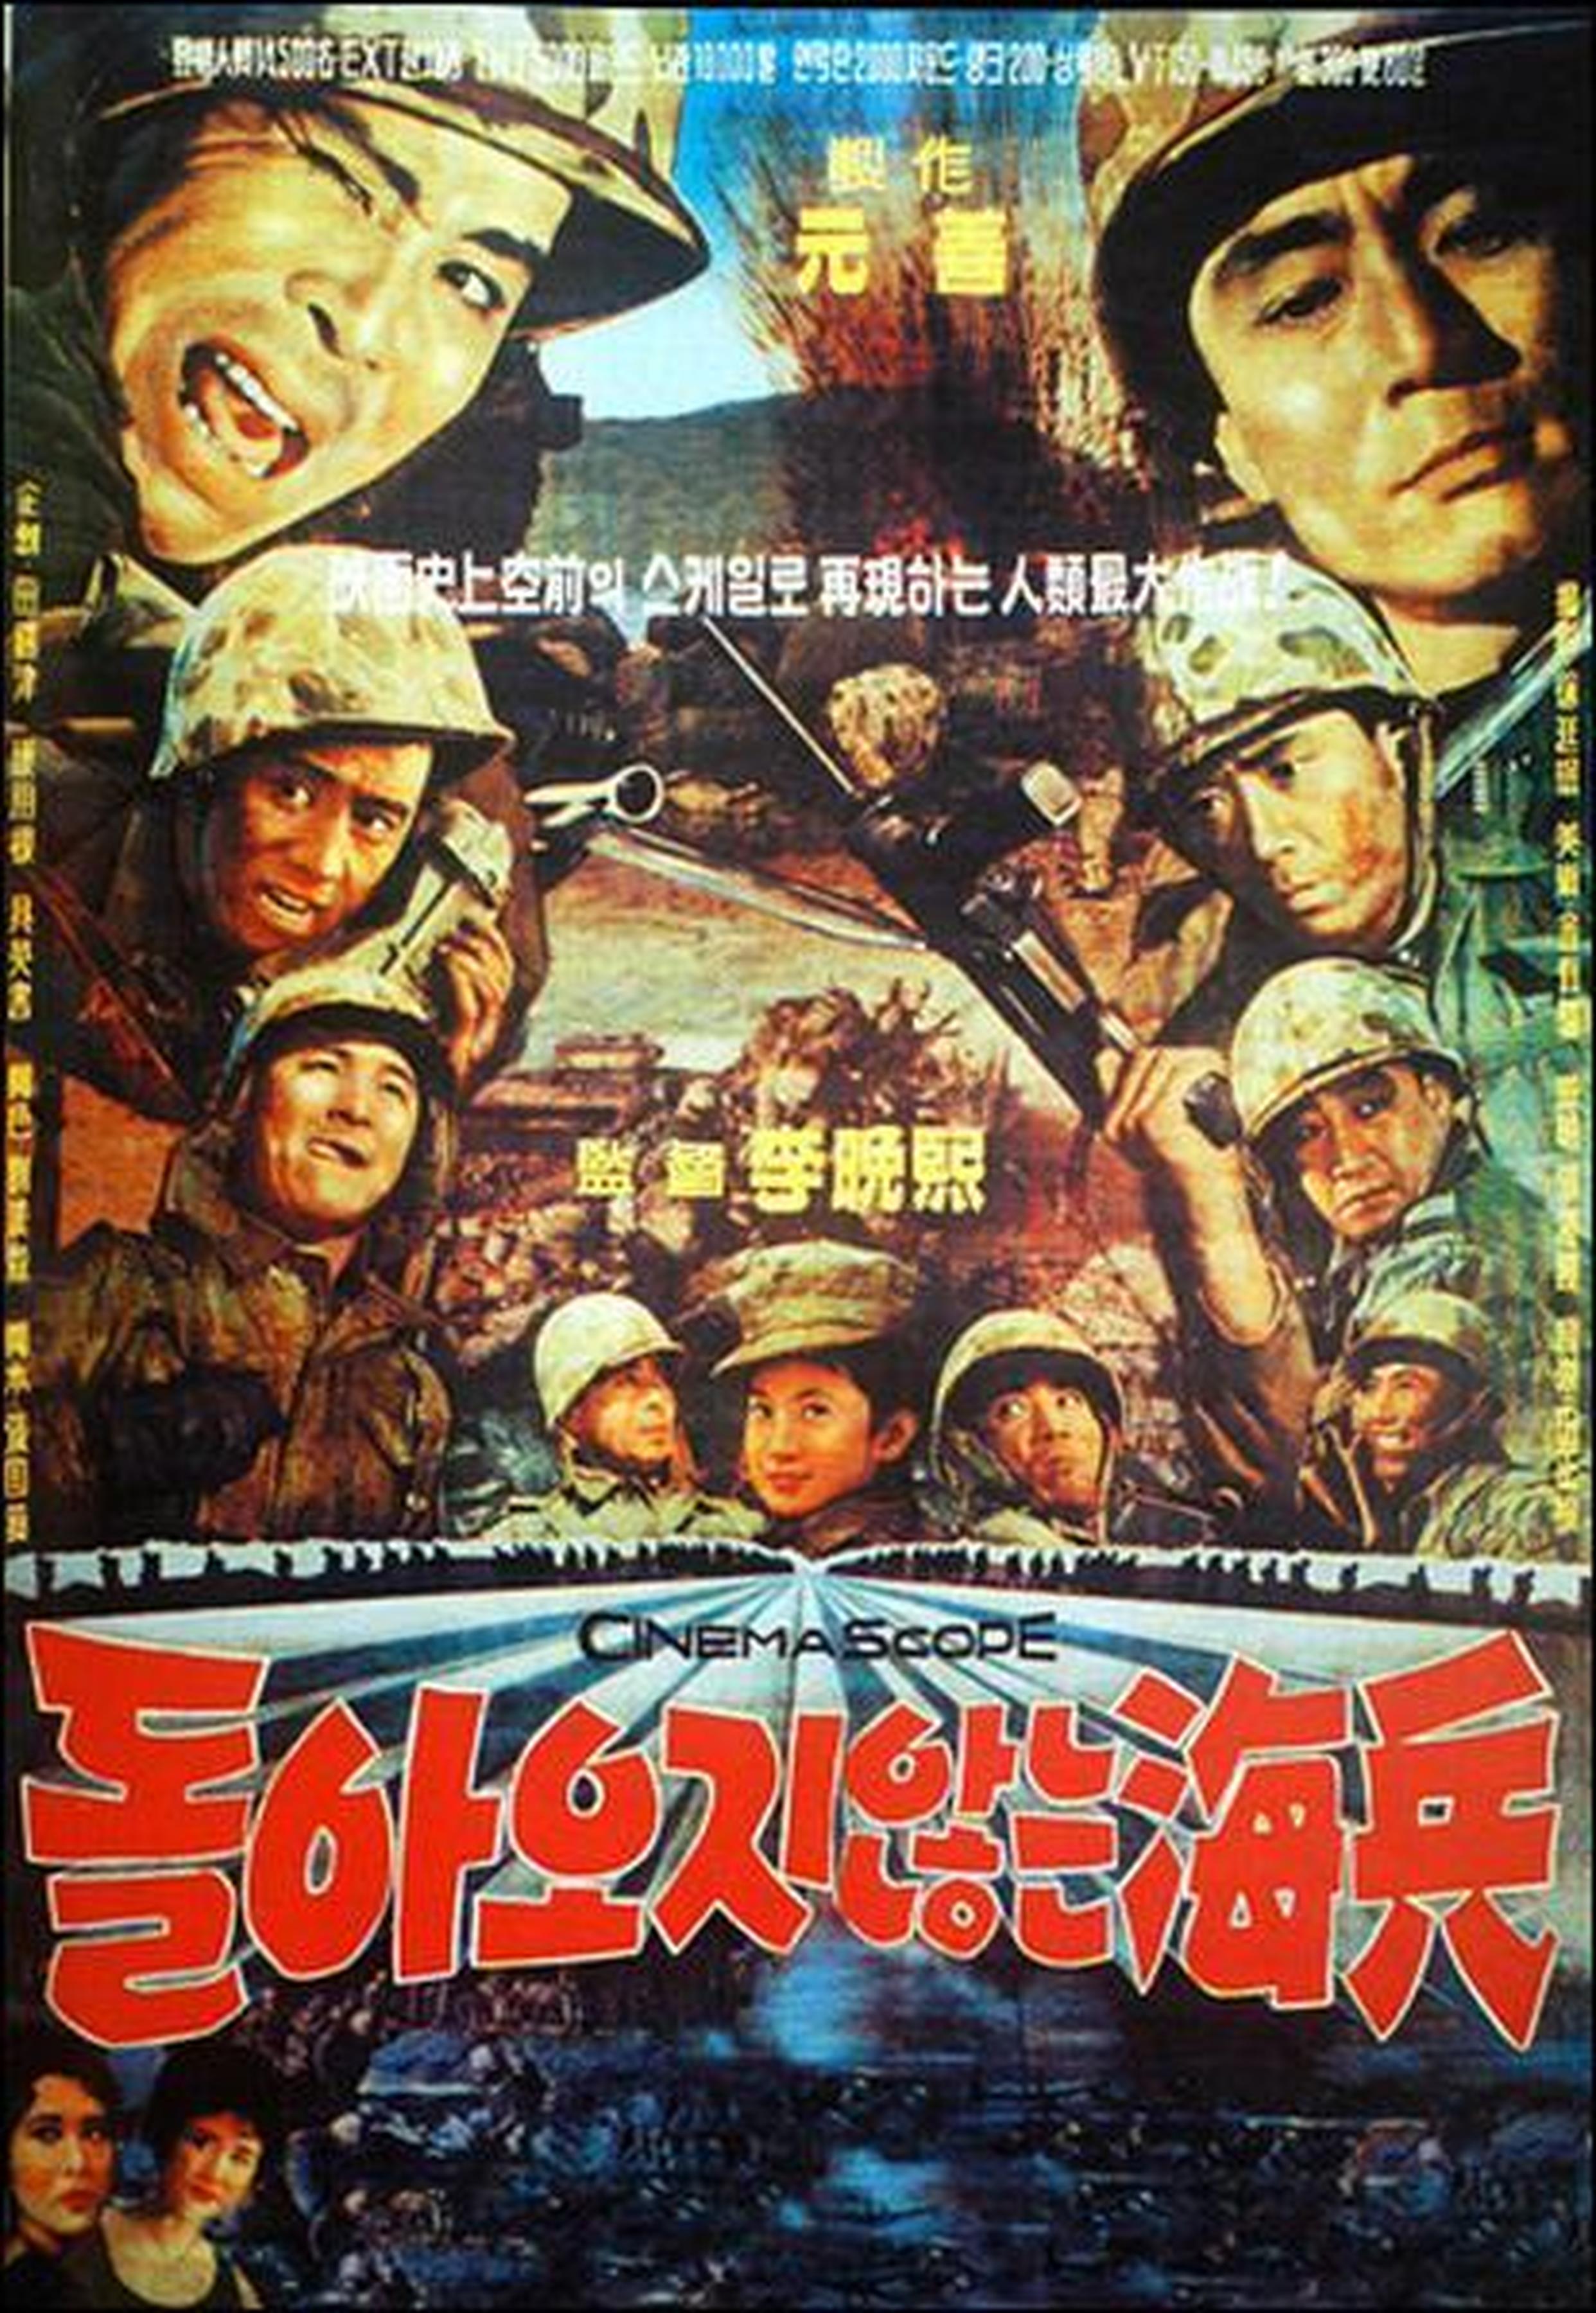 【1960-1970】《一去不回的海兵》 (1963) 导演李晚熙。韩国主旋律电影，流淌着浓郁的美式价值观，被视作60年代韩国电影的代表作。